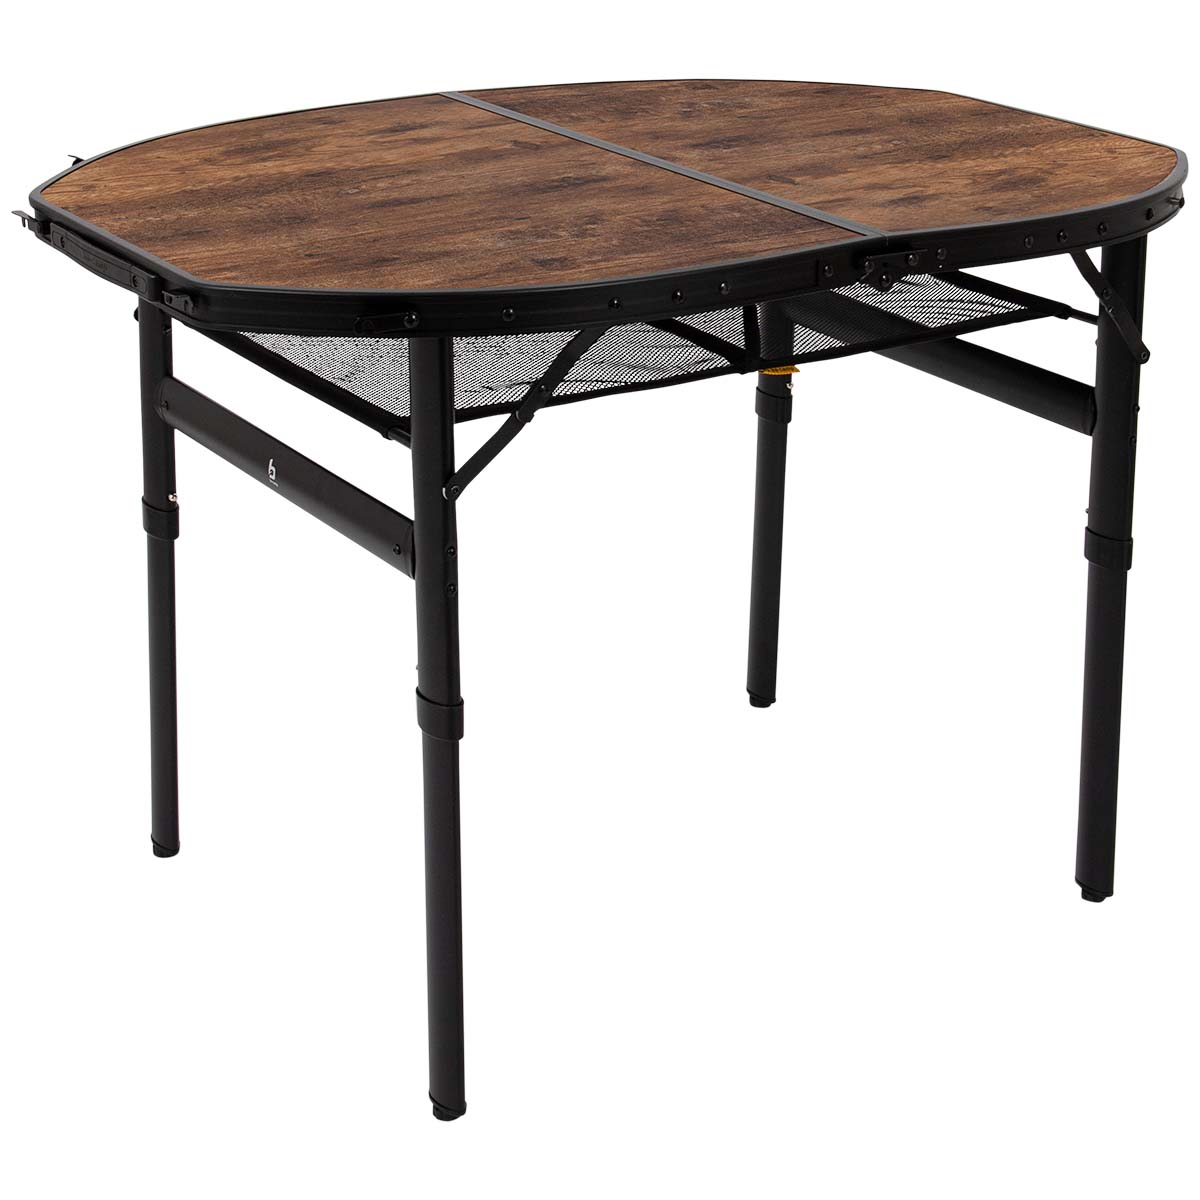 1404185 Een stijlvolle ovale aluminium tafel met een industriële uitstraling en houtlook tafelblad. Door middel van stelschroeven zijn de tafelpoten af te stellen op een ongelijke ondergrond. Daarnaast is de tafel zeer compact als koffermodel op te bergen door de afneembare poten en een deelbaar blad. Bovendien is de tafel voorzien van een net onder het MDF tafelblad om spullen in op te bergen, en een handgreep waardoor de tafel gemakkelijk is mee te nemen. De tafel is in hoogte verstelbaar: 37/70 cm.